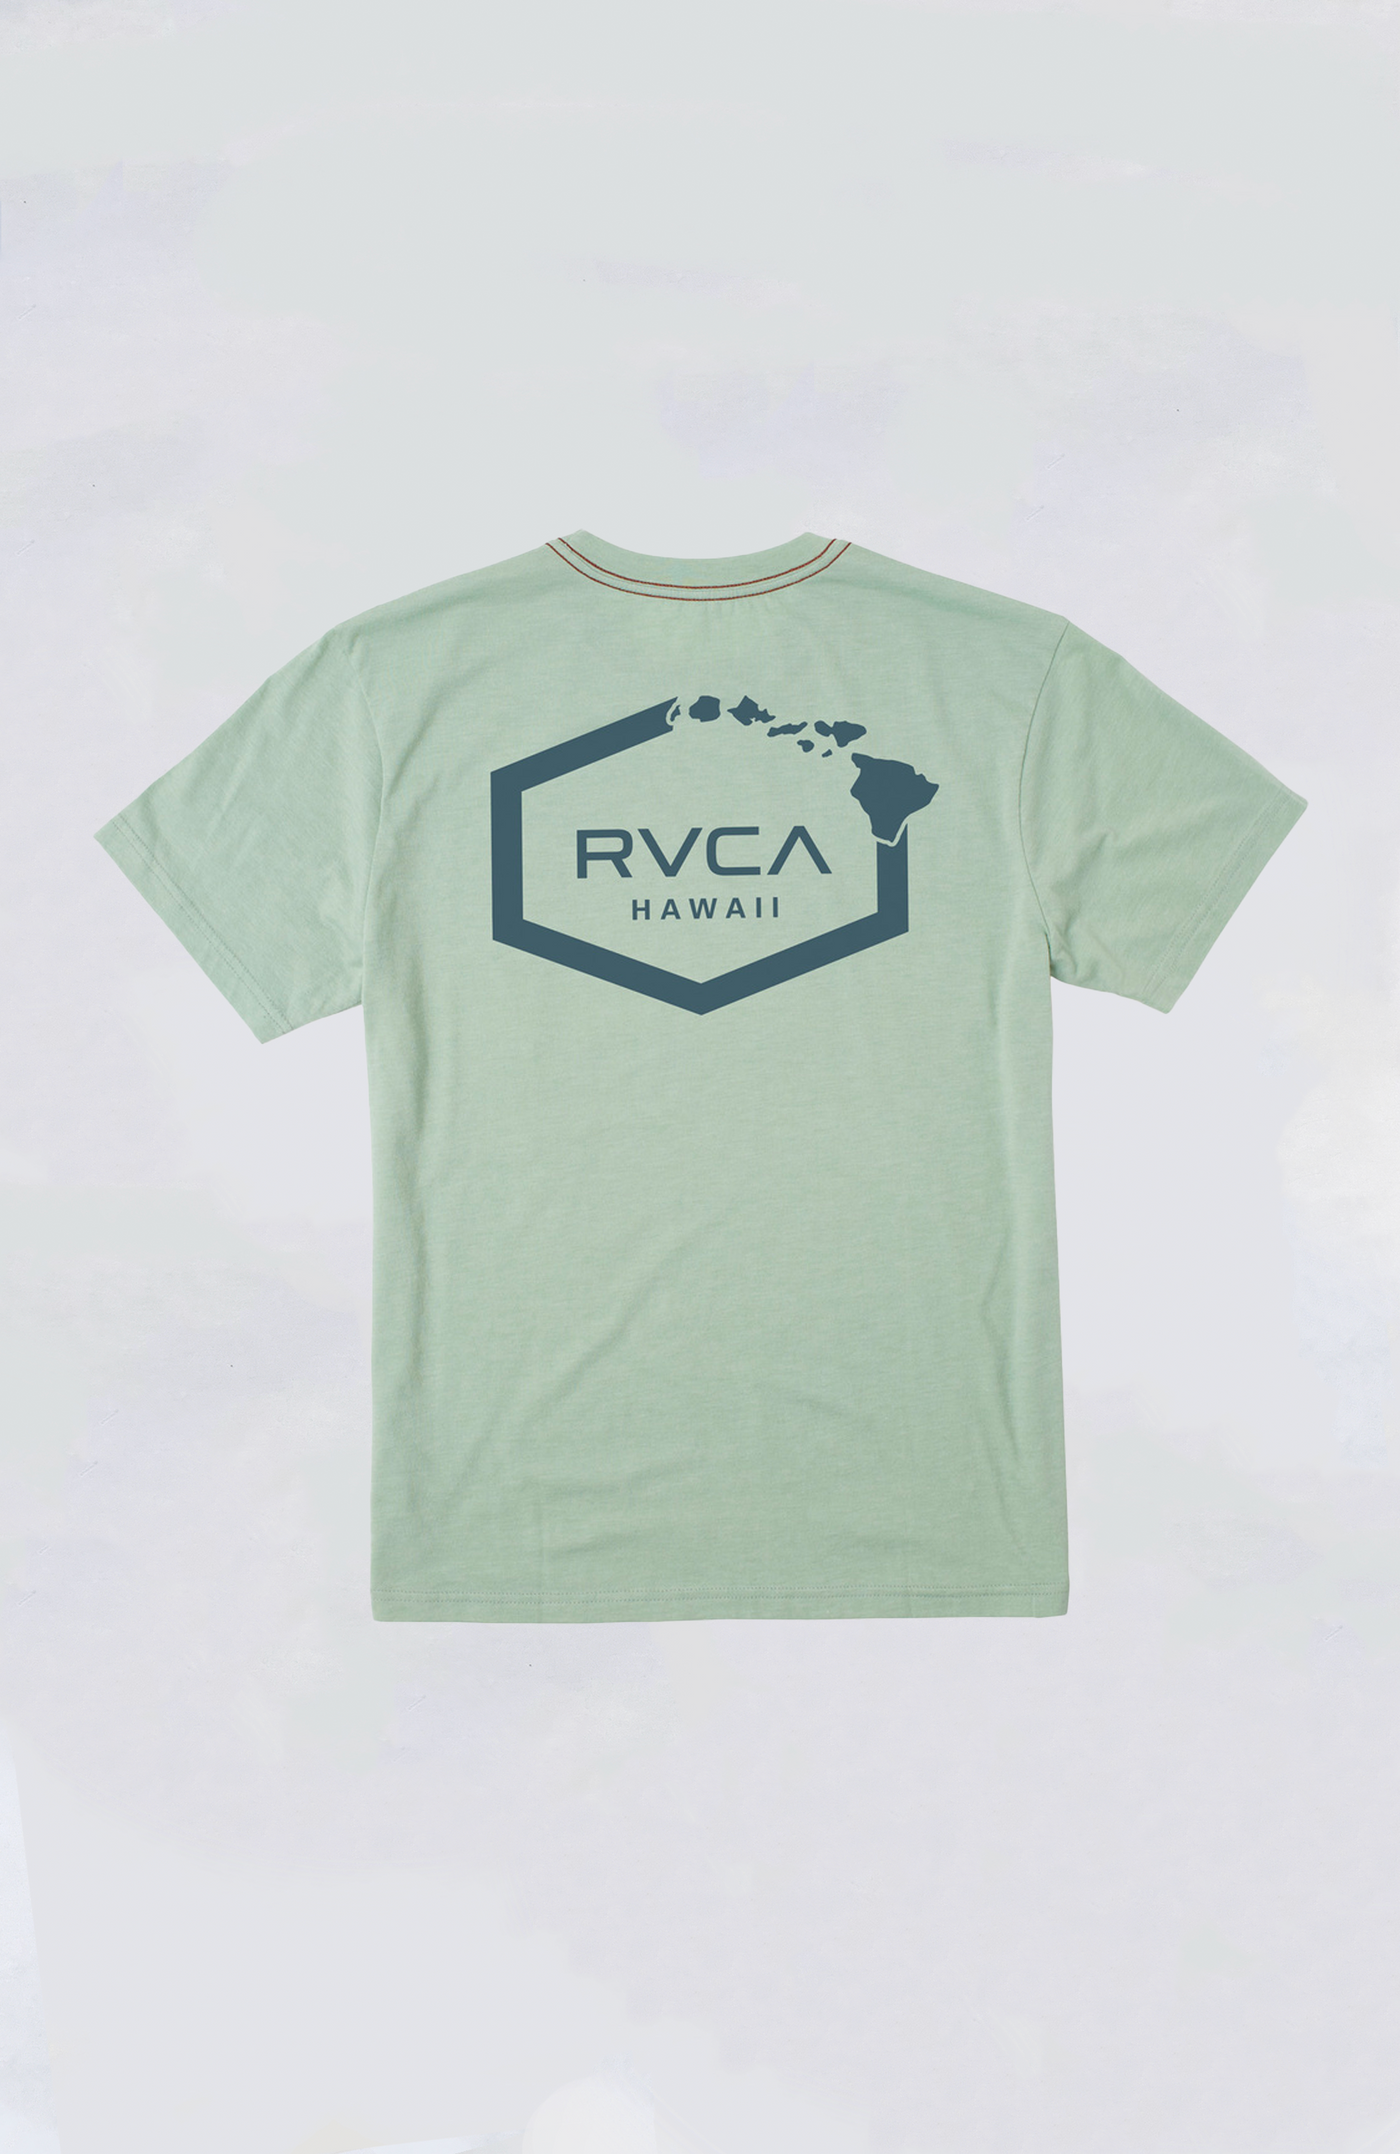 RVCA Tee - Hawaii Hex